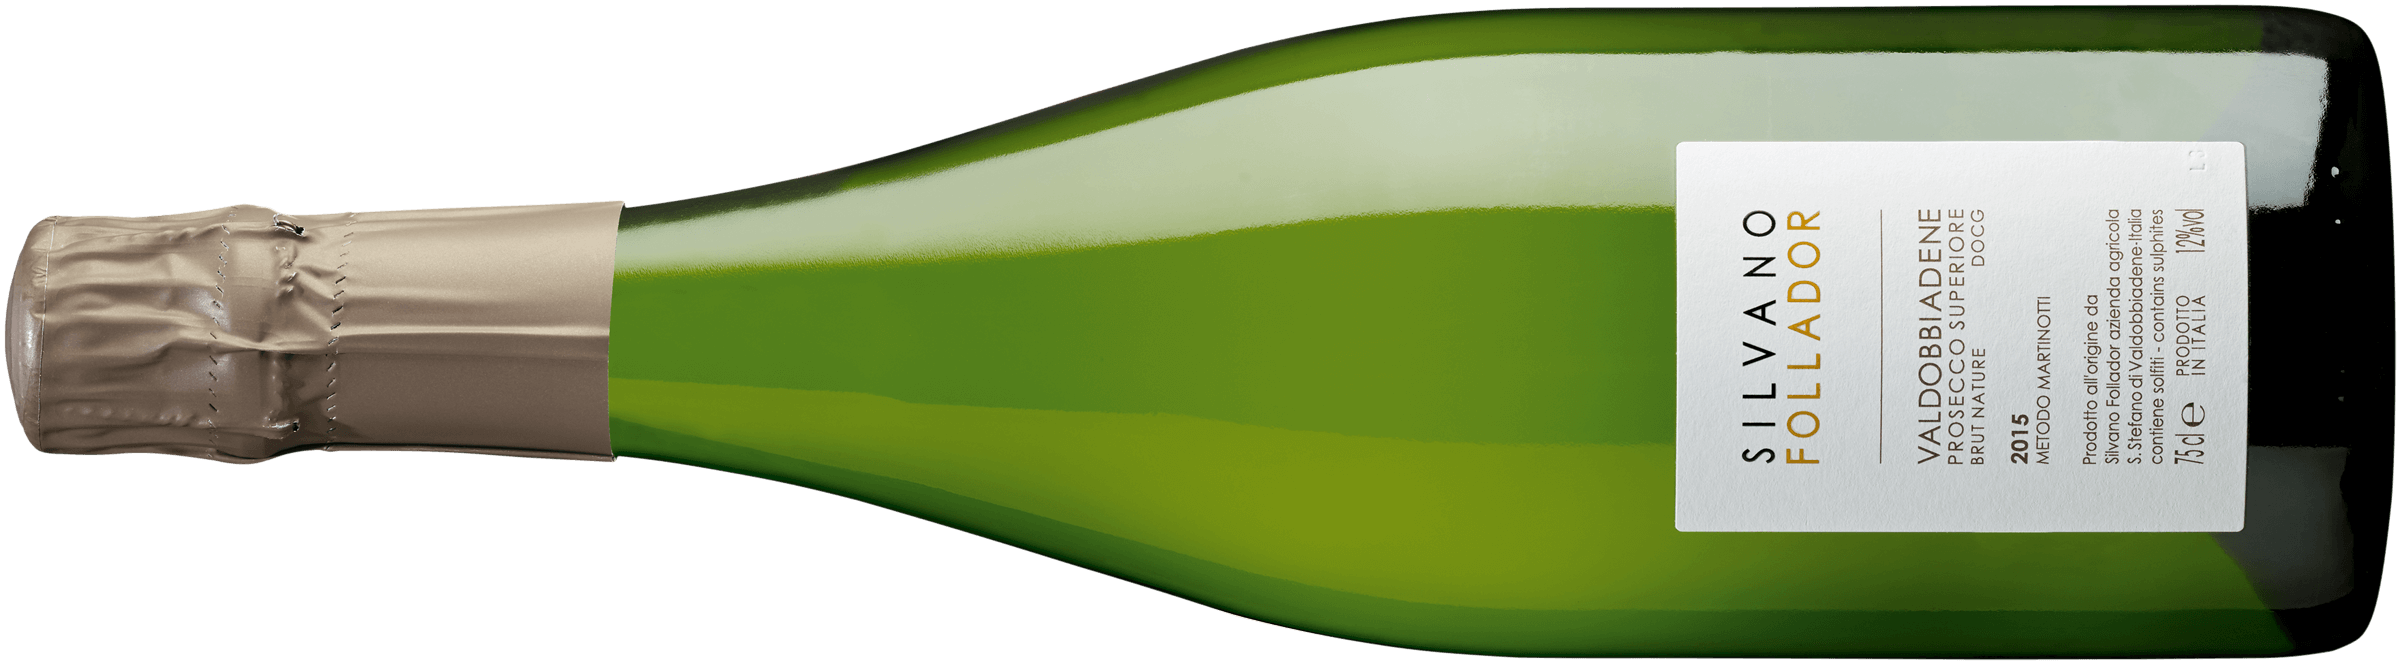 Valdobbiadene Prosecco Superiore Extra Brut DOCG/bd – Silvano Follador –  Caratello - les vins italiens